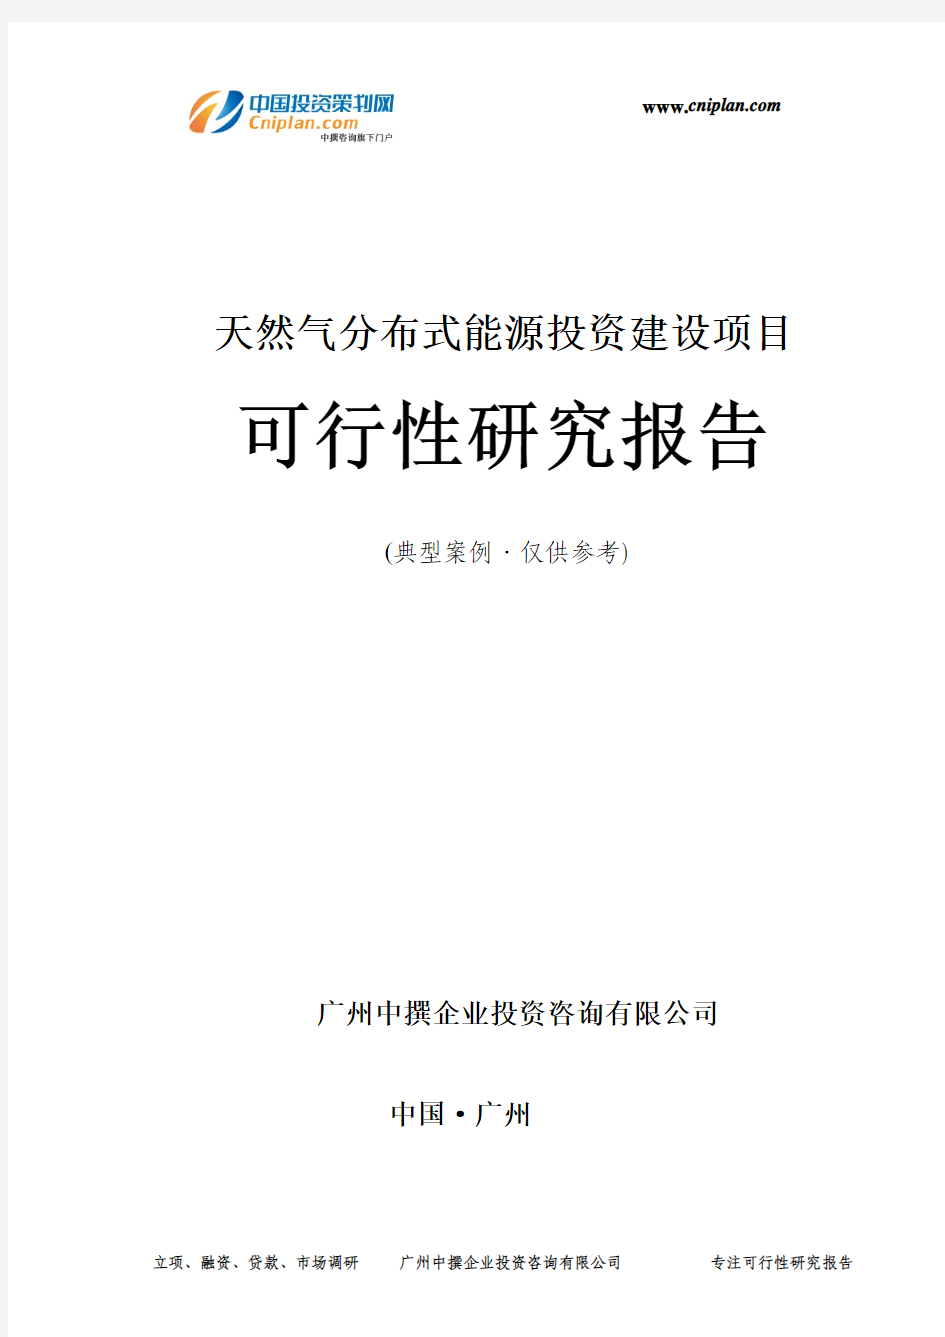 天然气分布式能源投资建设项目可行性研究报告-广州中撰咨询